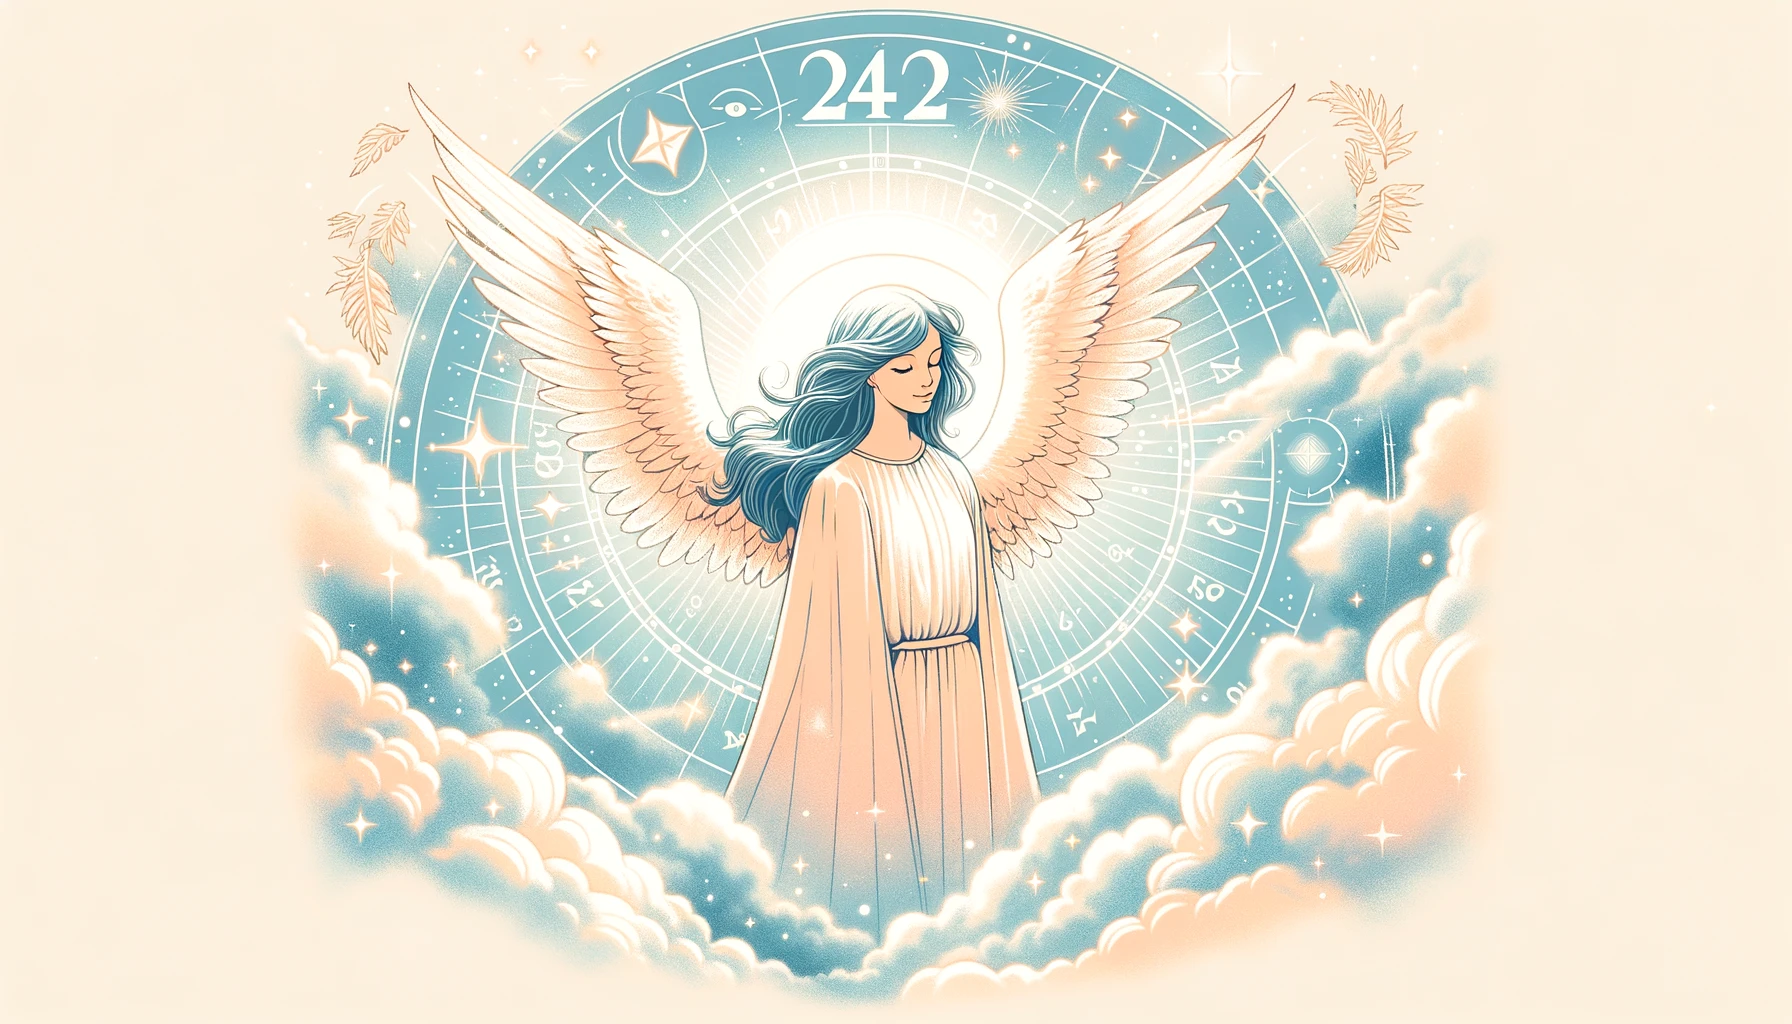 「エンジェルナンバー242の意味・前兆」というテーマに基づいて作成したアイキャッチ画像です。天使の存在と数字「242」を通じて導きと保護を象徴するデザインを採用しています。記事の内容と調和する、穏やかでスピリチュアルな雰囲気を表現したイメージとなっております。